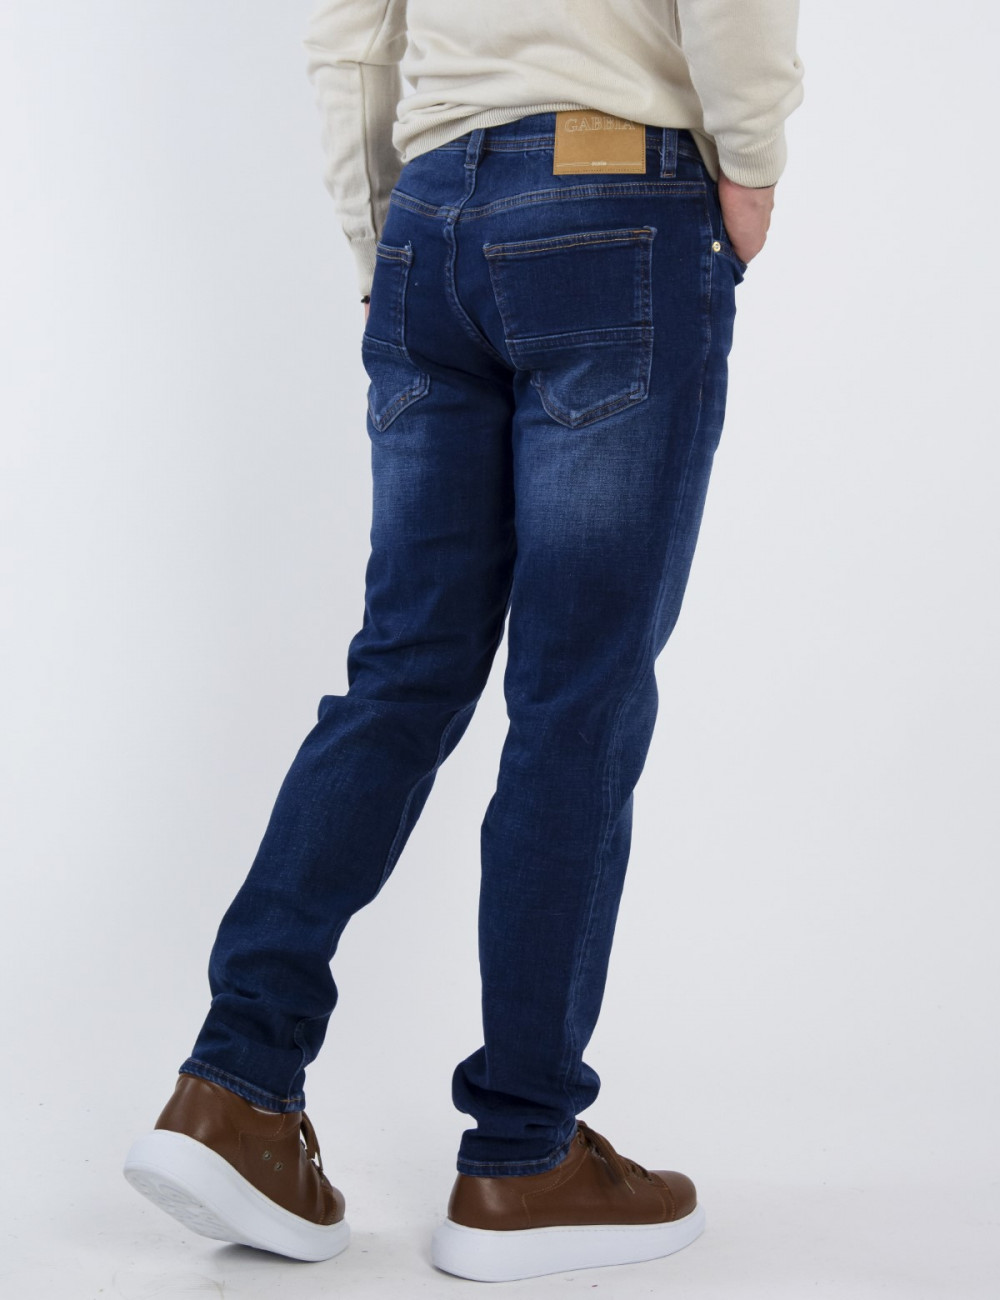 Ανδρικό μπλε τζιν παντελόνι με ξέβαμμα πεντάτσεπο με κουμπιά GB5003